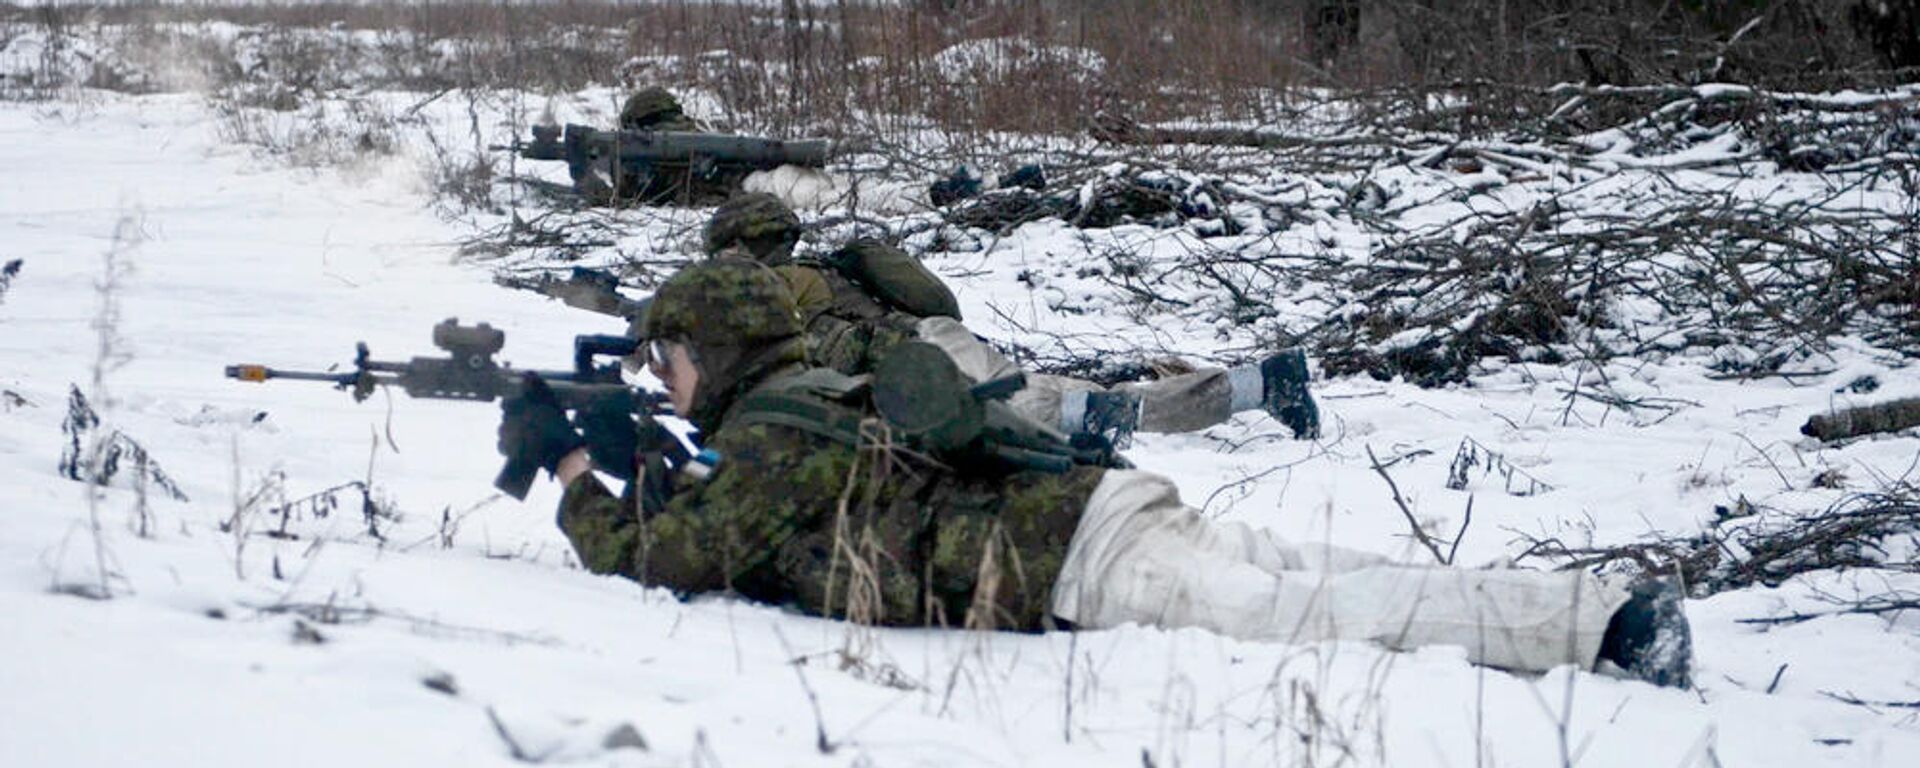 Эстонские военнослужащие во время учений на полигоне Тапа, 16 февраля 2016 года  - Sputnik Латвия, 1920, 17.01.2022